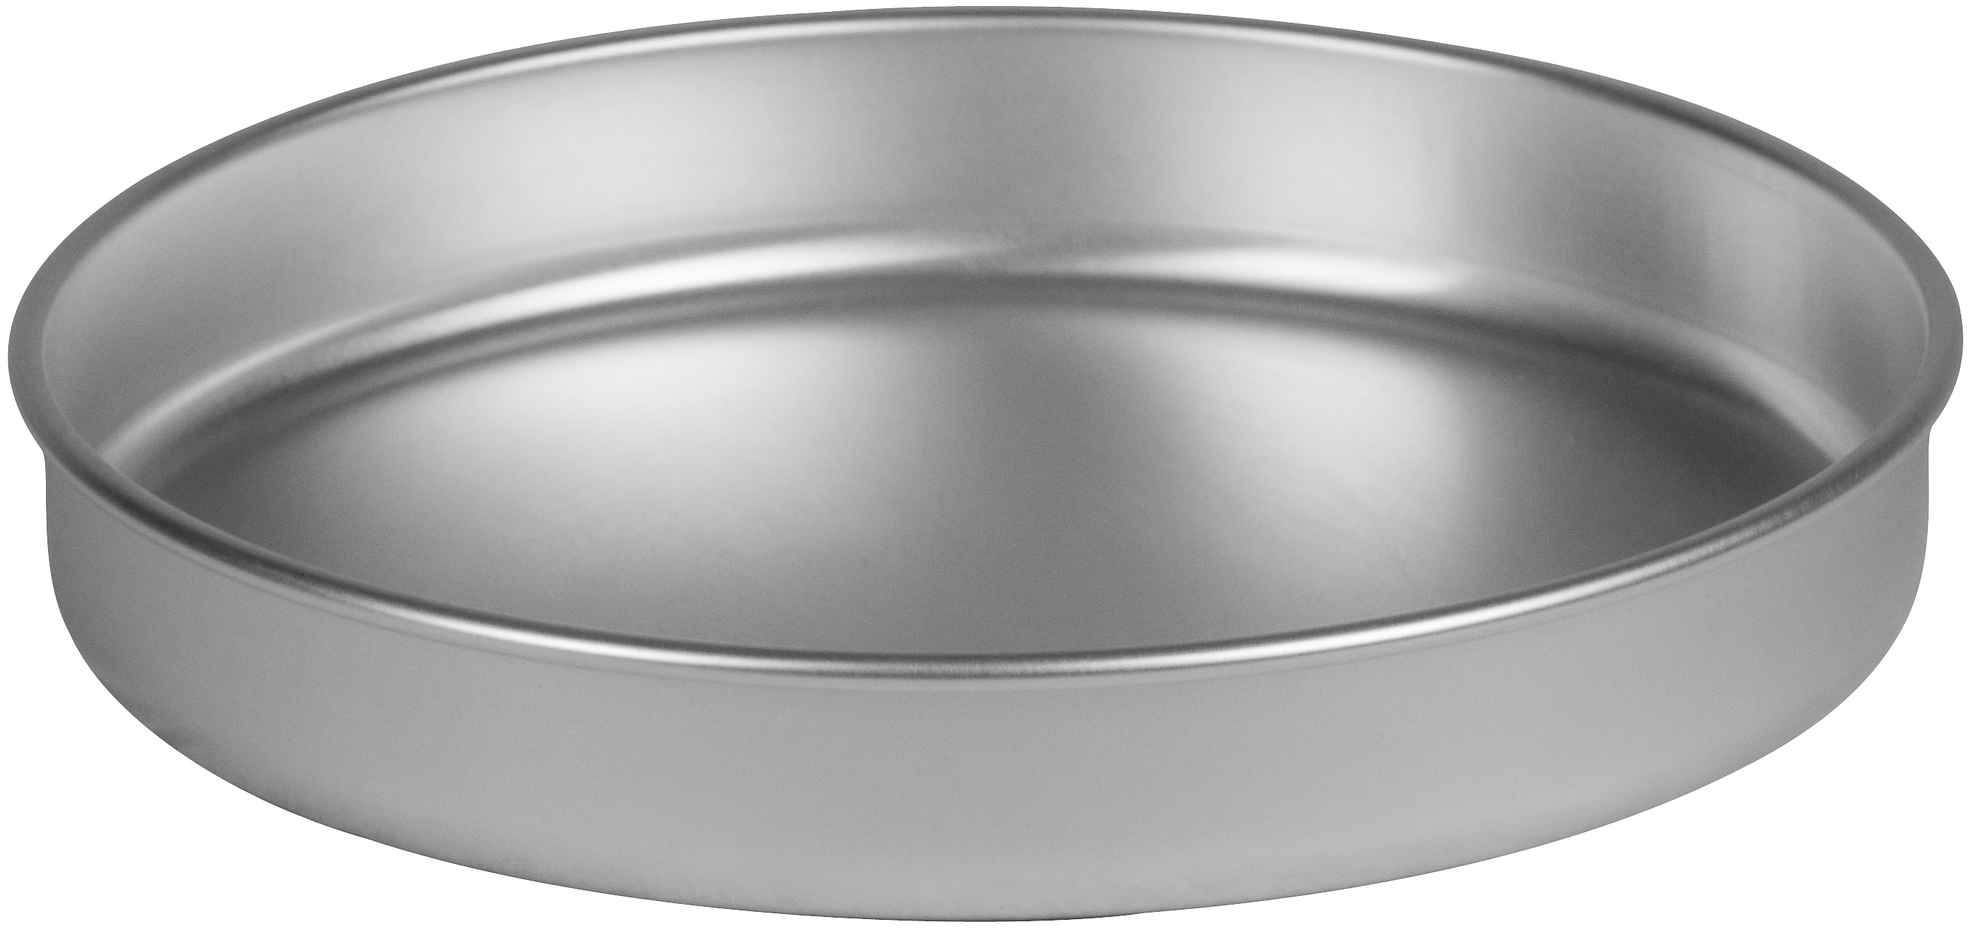 Trangia Frying pan / lid aluminum 25  series